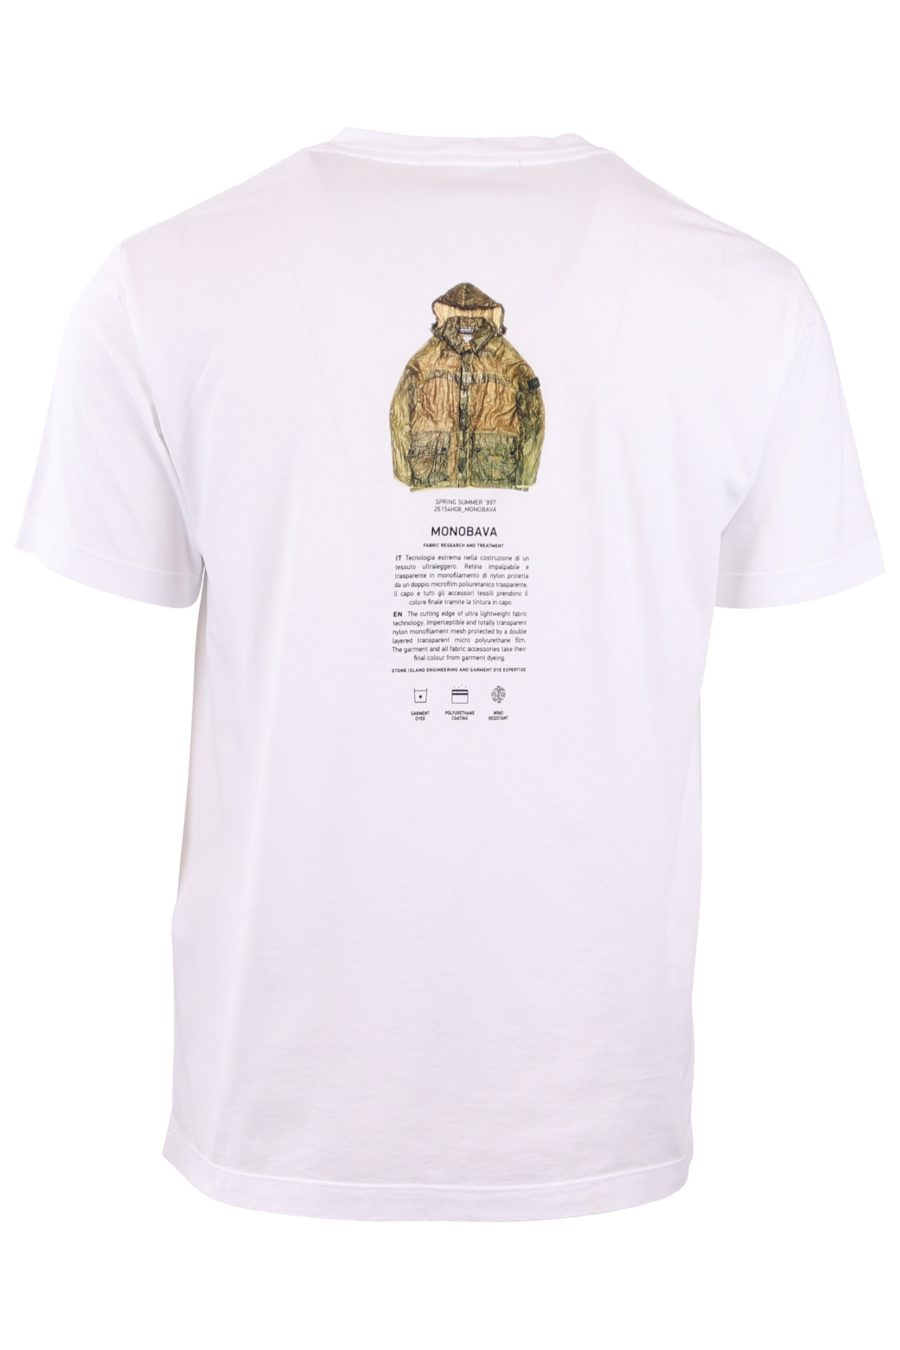 Camiseta Stone Island blanca con logo pequeño archivio - 32b4d9a7188de4a8de6a244037442bb5bb5a15bf